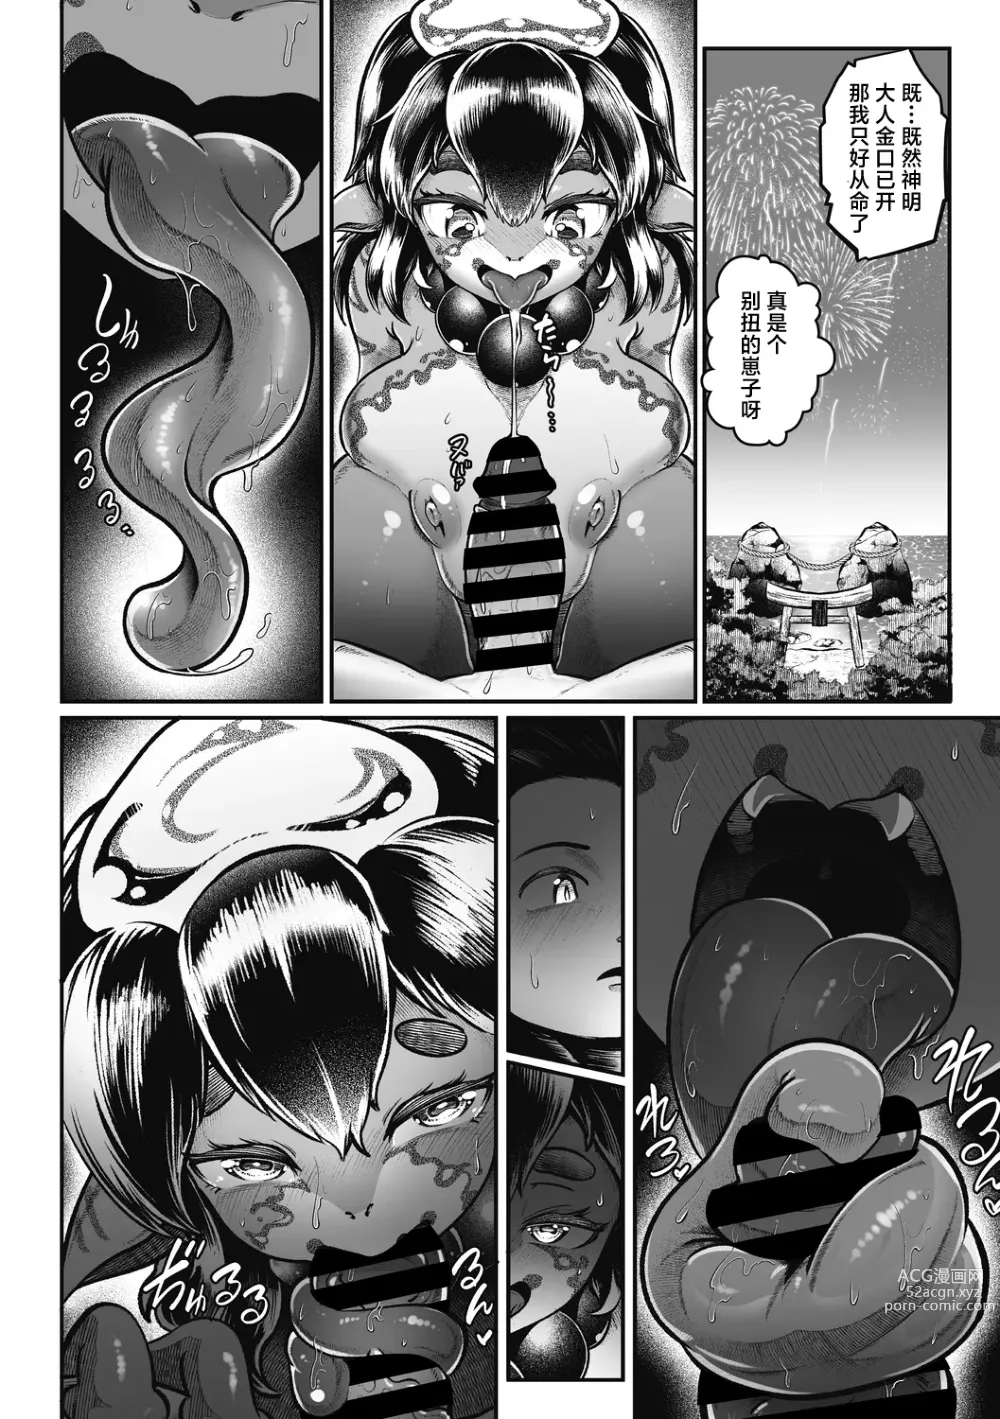 Page 9 of manga Natsu to Ame Tokidoki Uchiage Hanabi